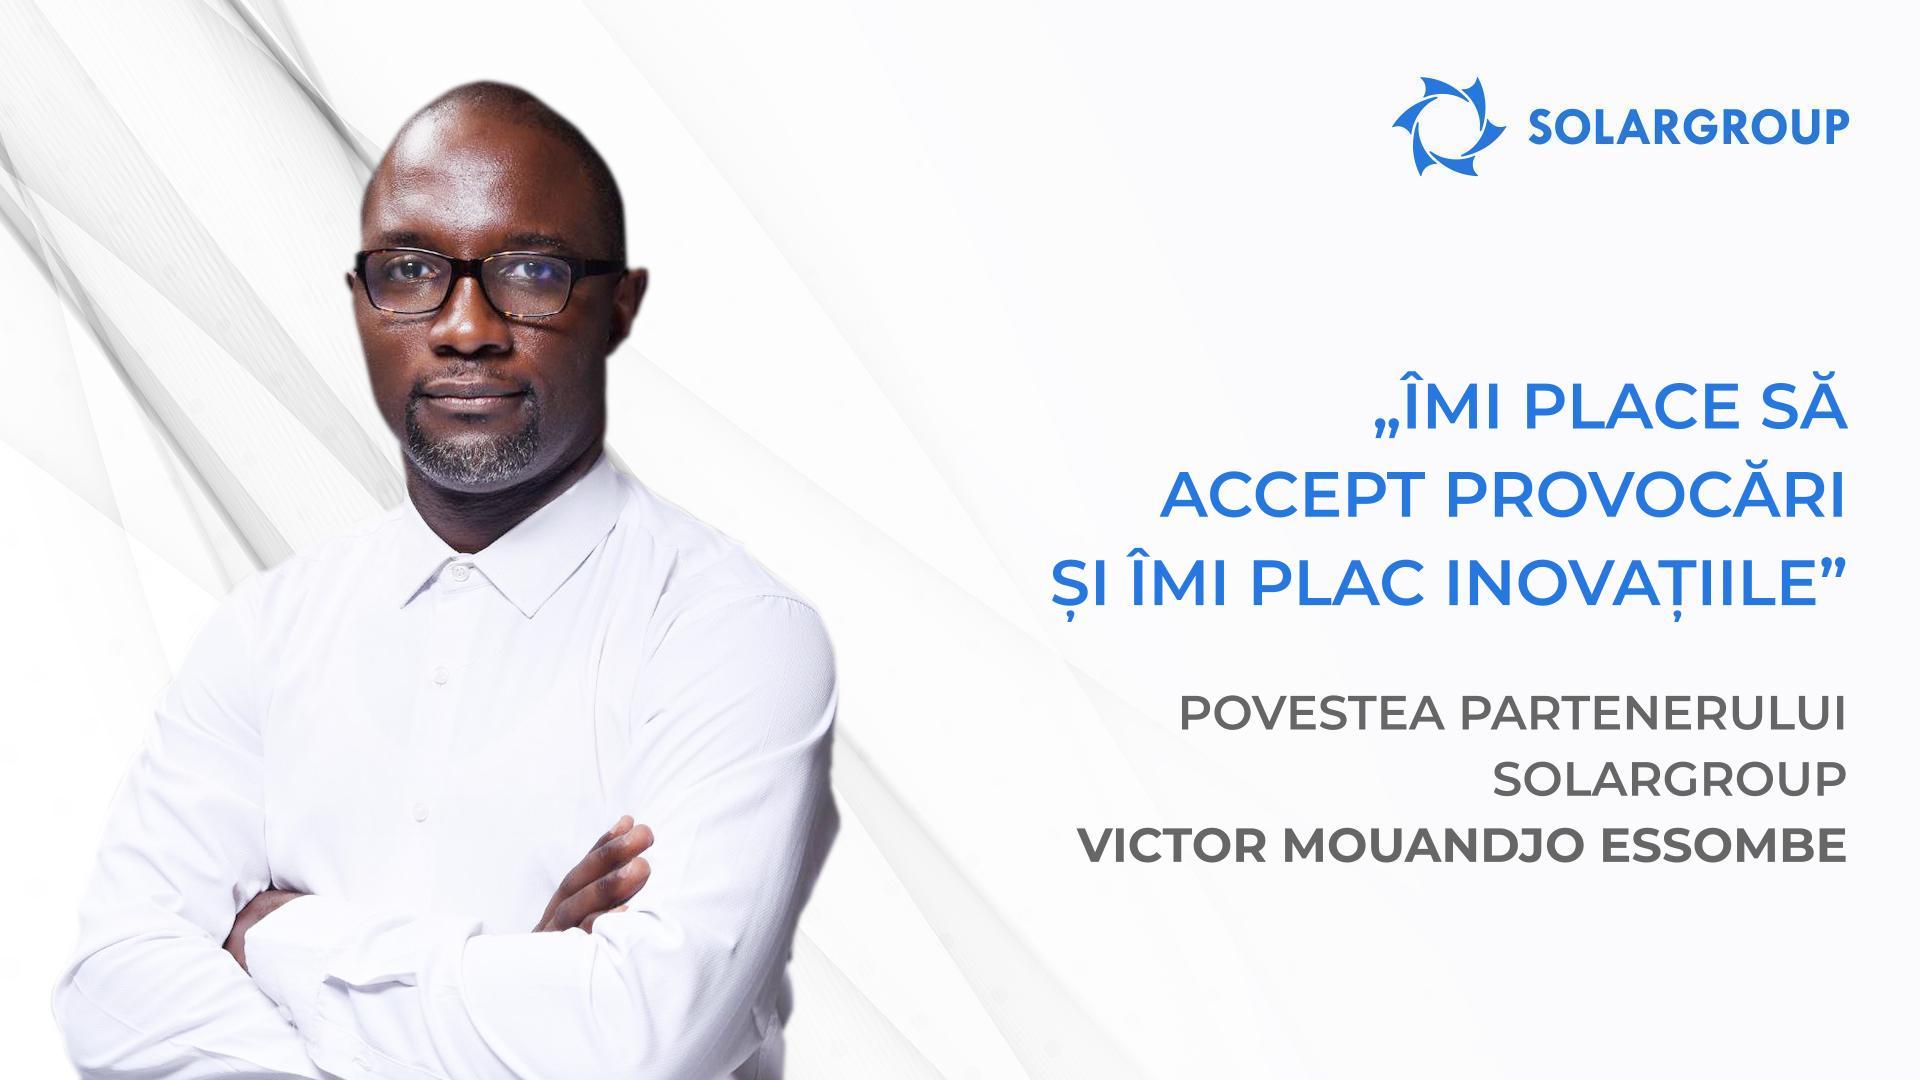 Eu și echipa mea avem planuri mari | Povestea partenerului SOLARGROUP Victor Mouandjo Essombe